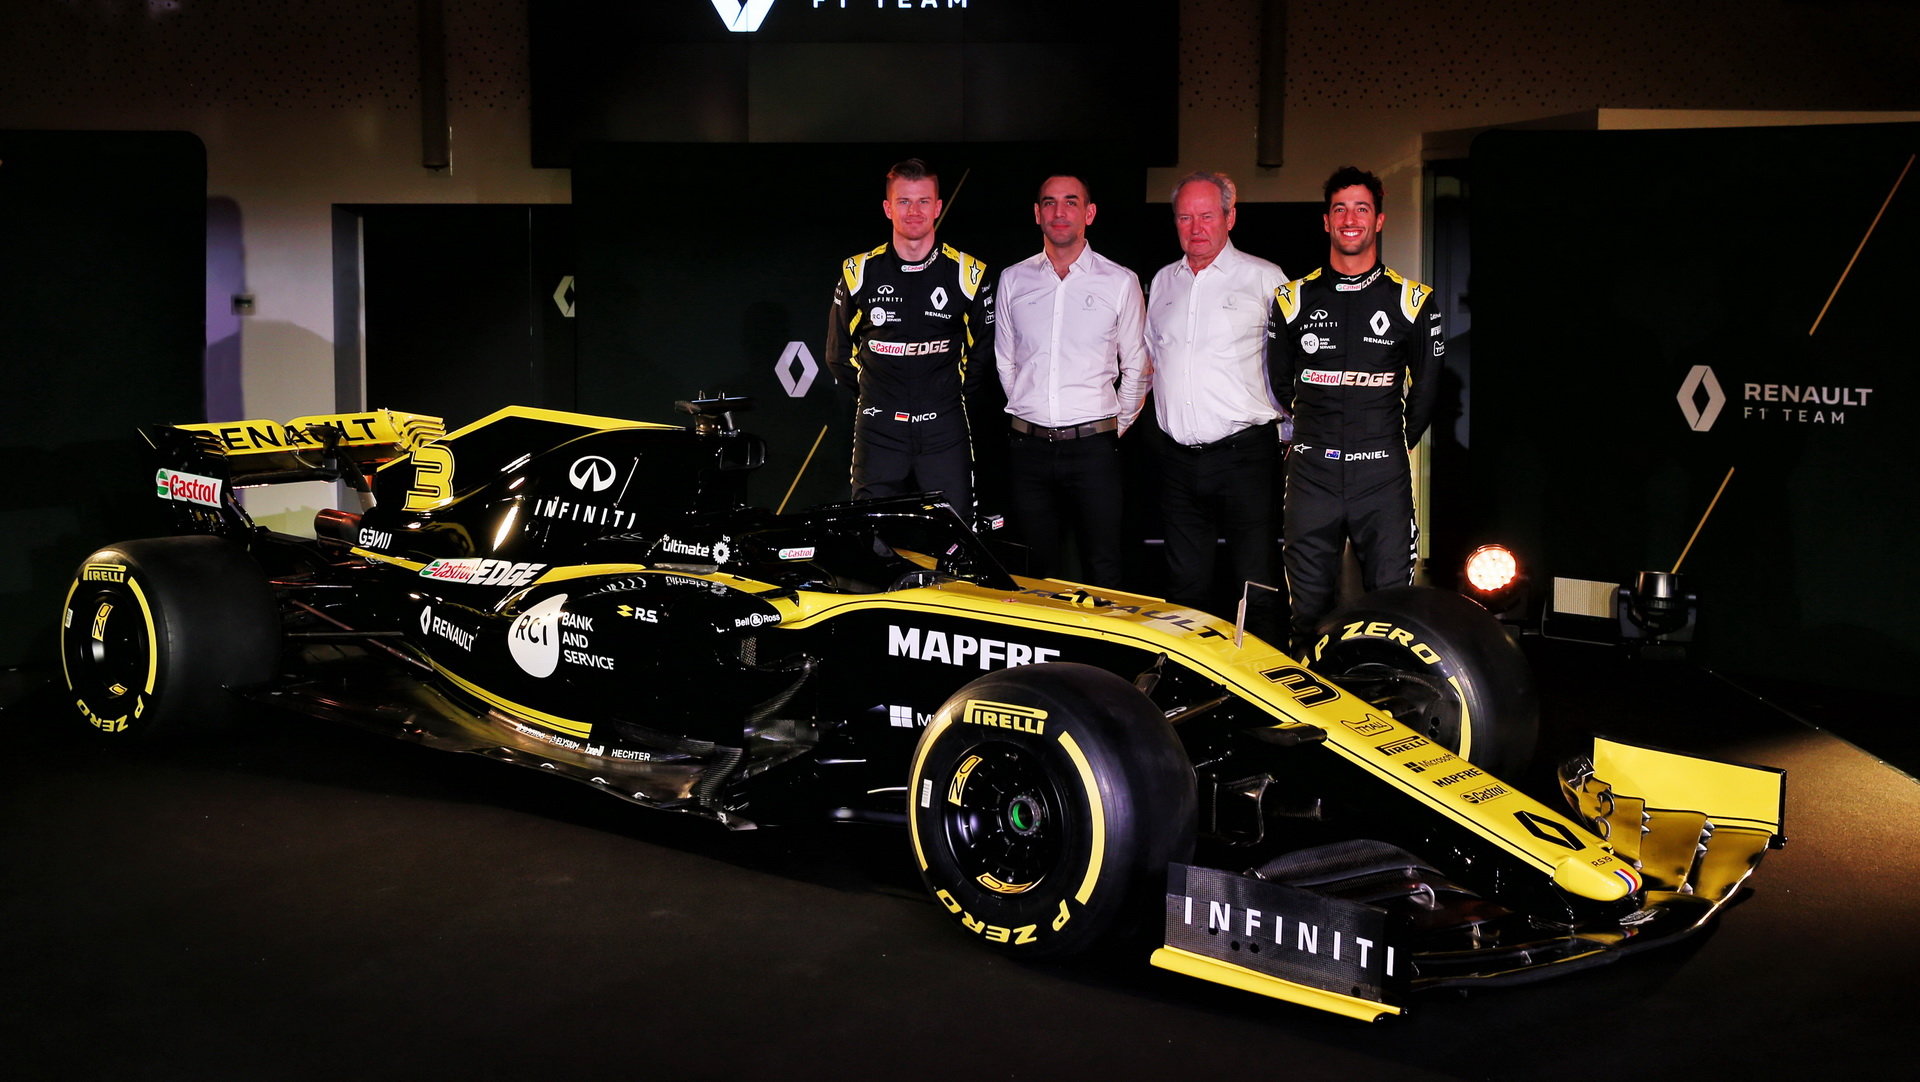 Šéfové Renault se svými jezdci při včerejší prezentaci